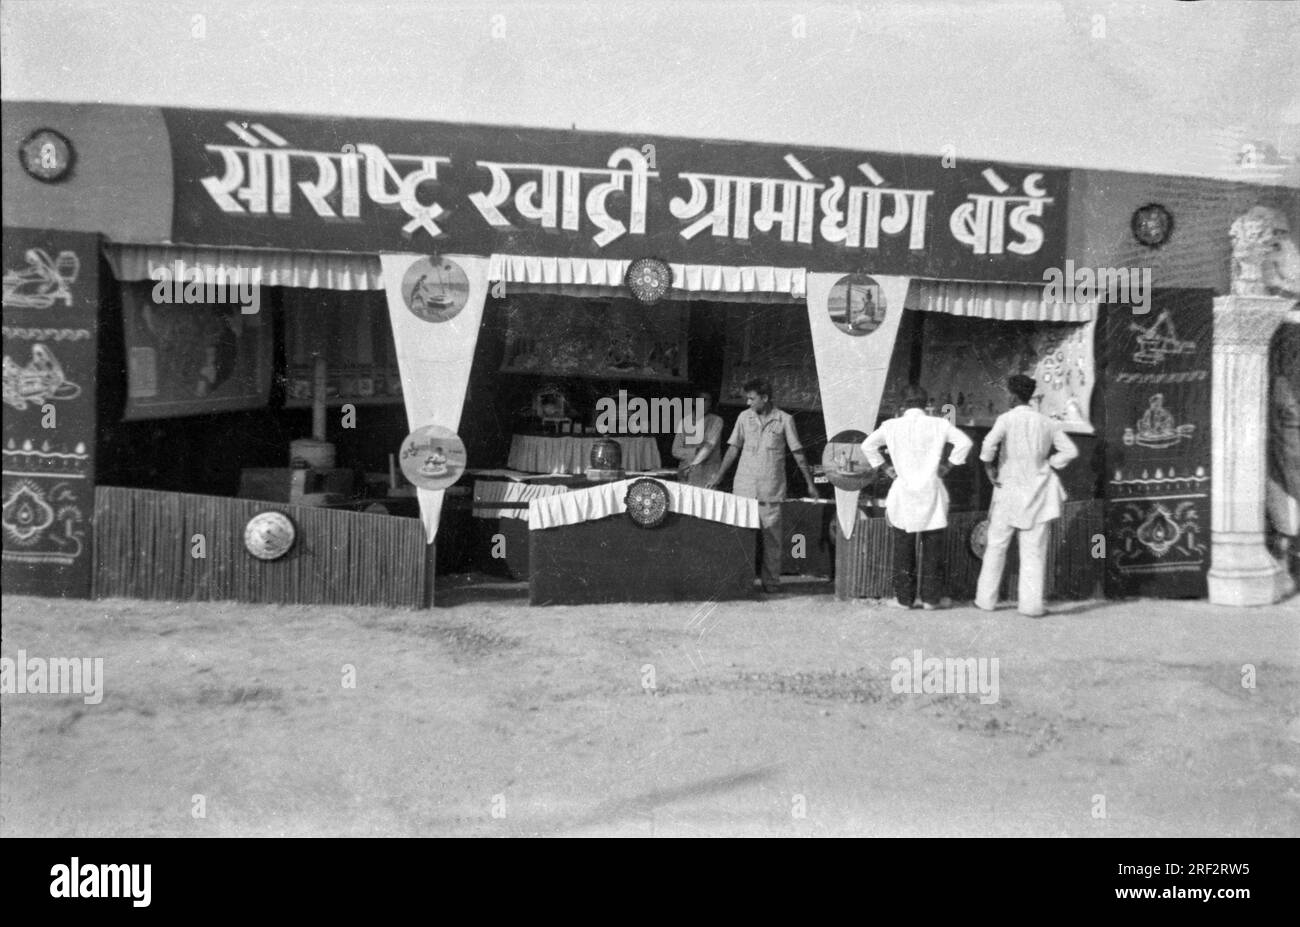 Cuadro antiguo vintage en blanco y negro del siglo XX de la India Saurashtra Khadi Gram Udyog Board stand de exposición de la India de los años cincuenta Foto de stock